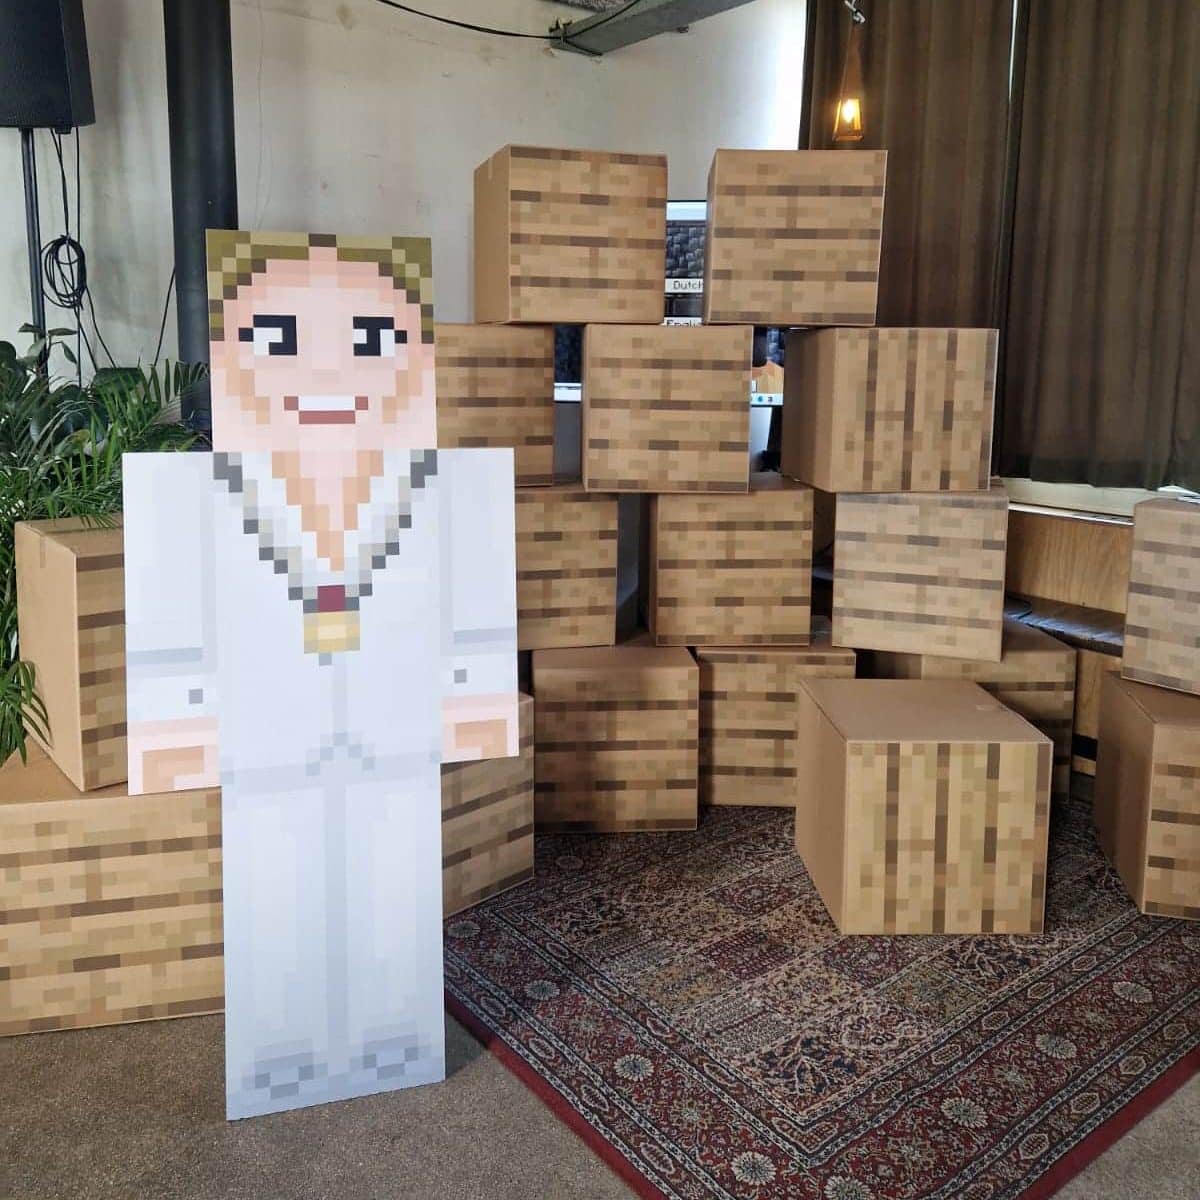 De Minecraft muur die wethouder Schouten samen met de kinderen doorbrak om het project te openen. En Burgemeester Anja Schouten als Minecraft figuur. 